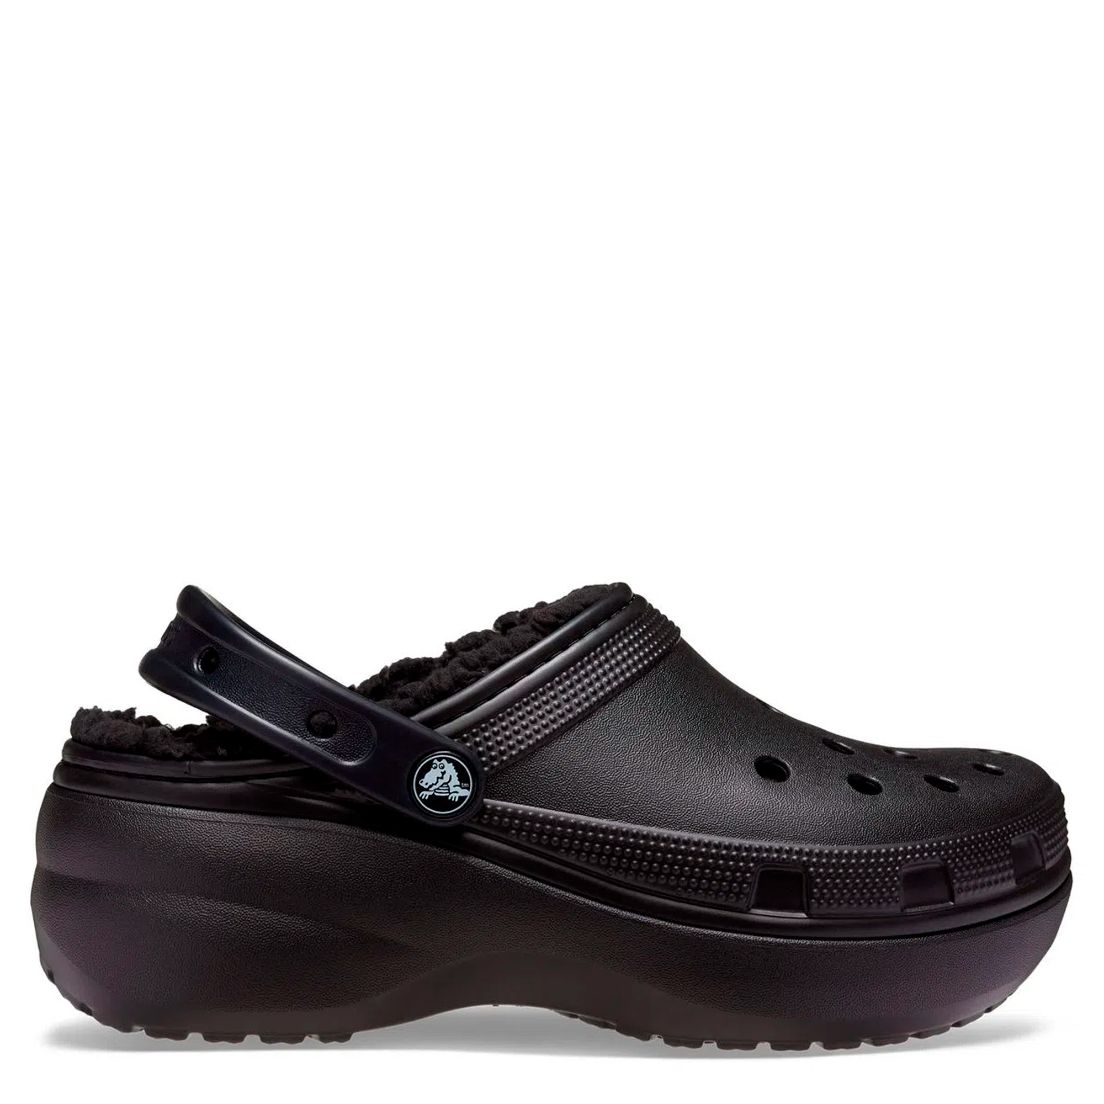 Crocs Classic Plataform Lined Clog W De Mujer - Tus Zapatos